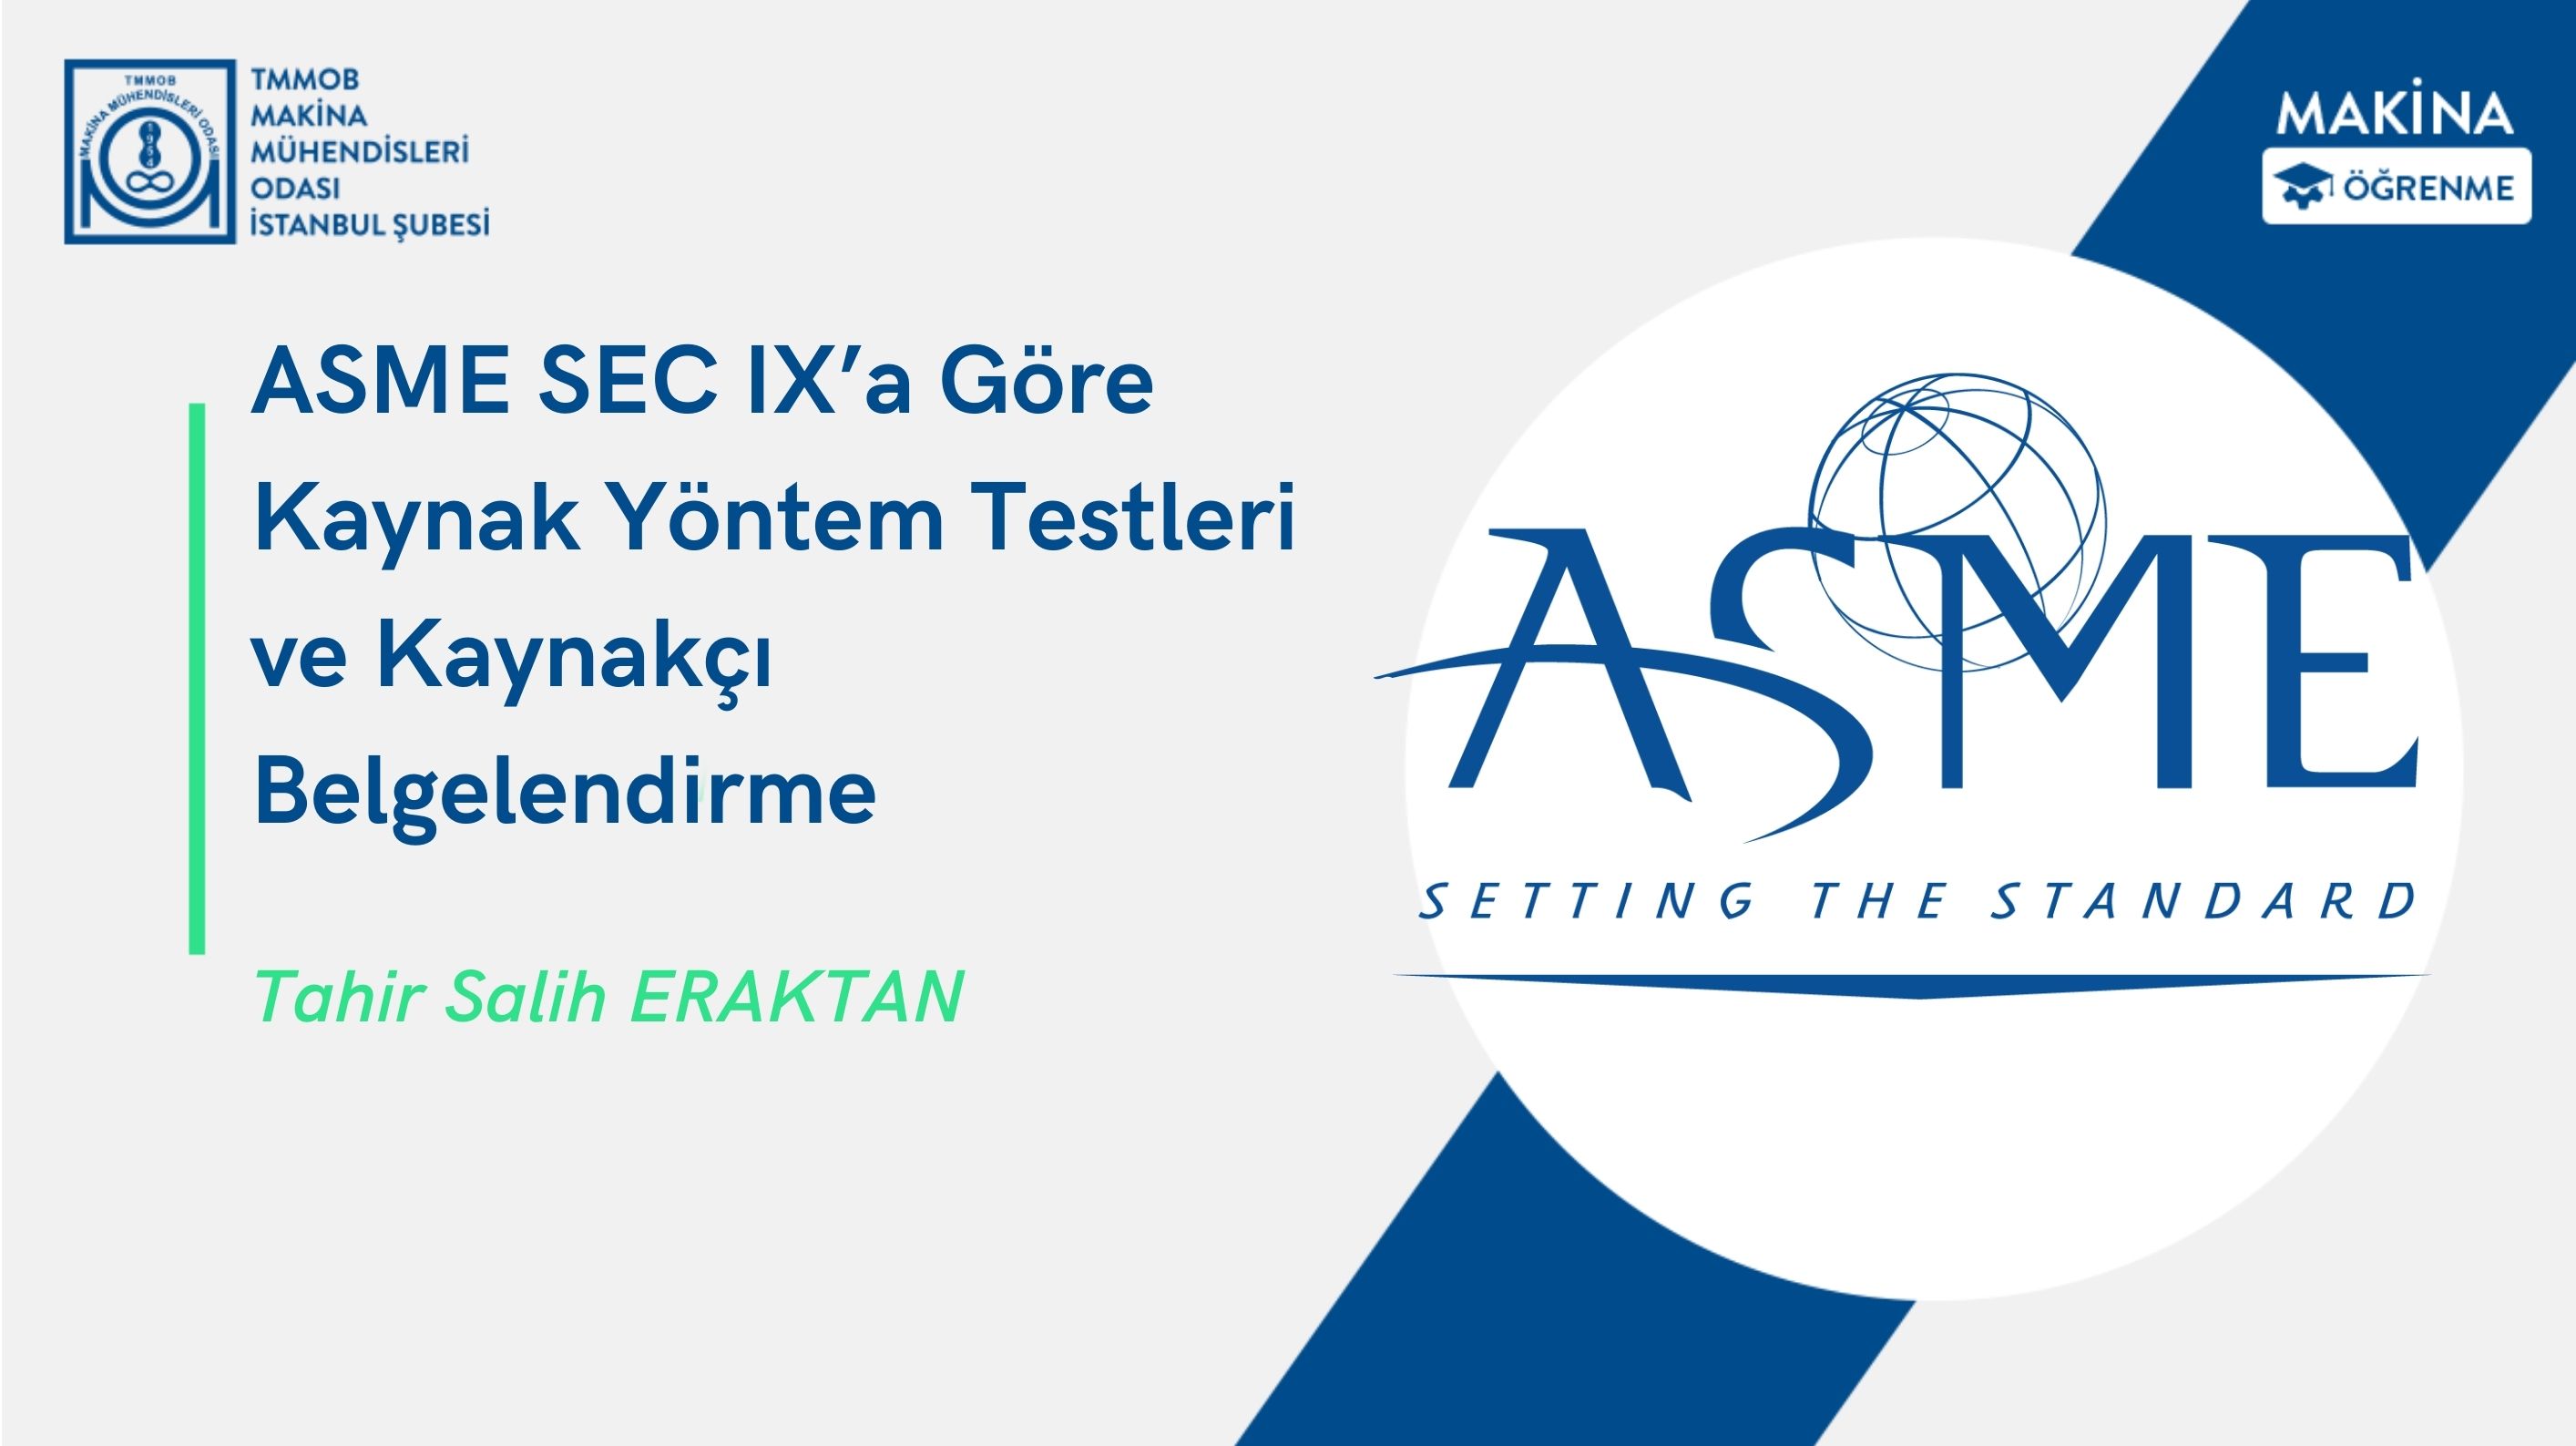 ASME SEC IX’a Göre Kaynak Yöntem Testleri ve Kaynakçı Belgelendirme